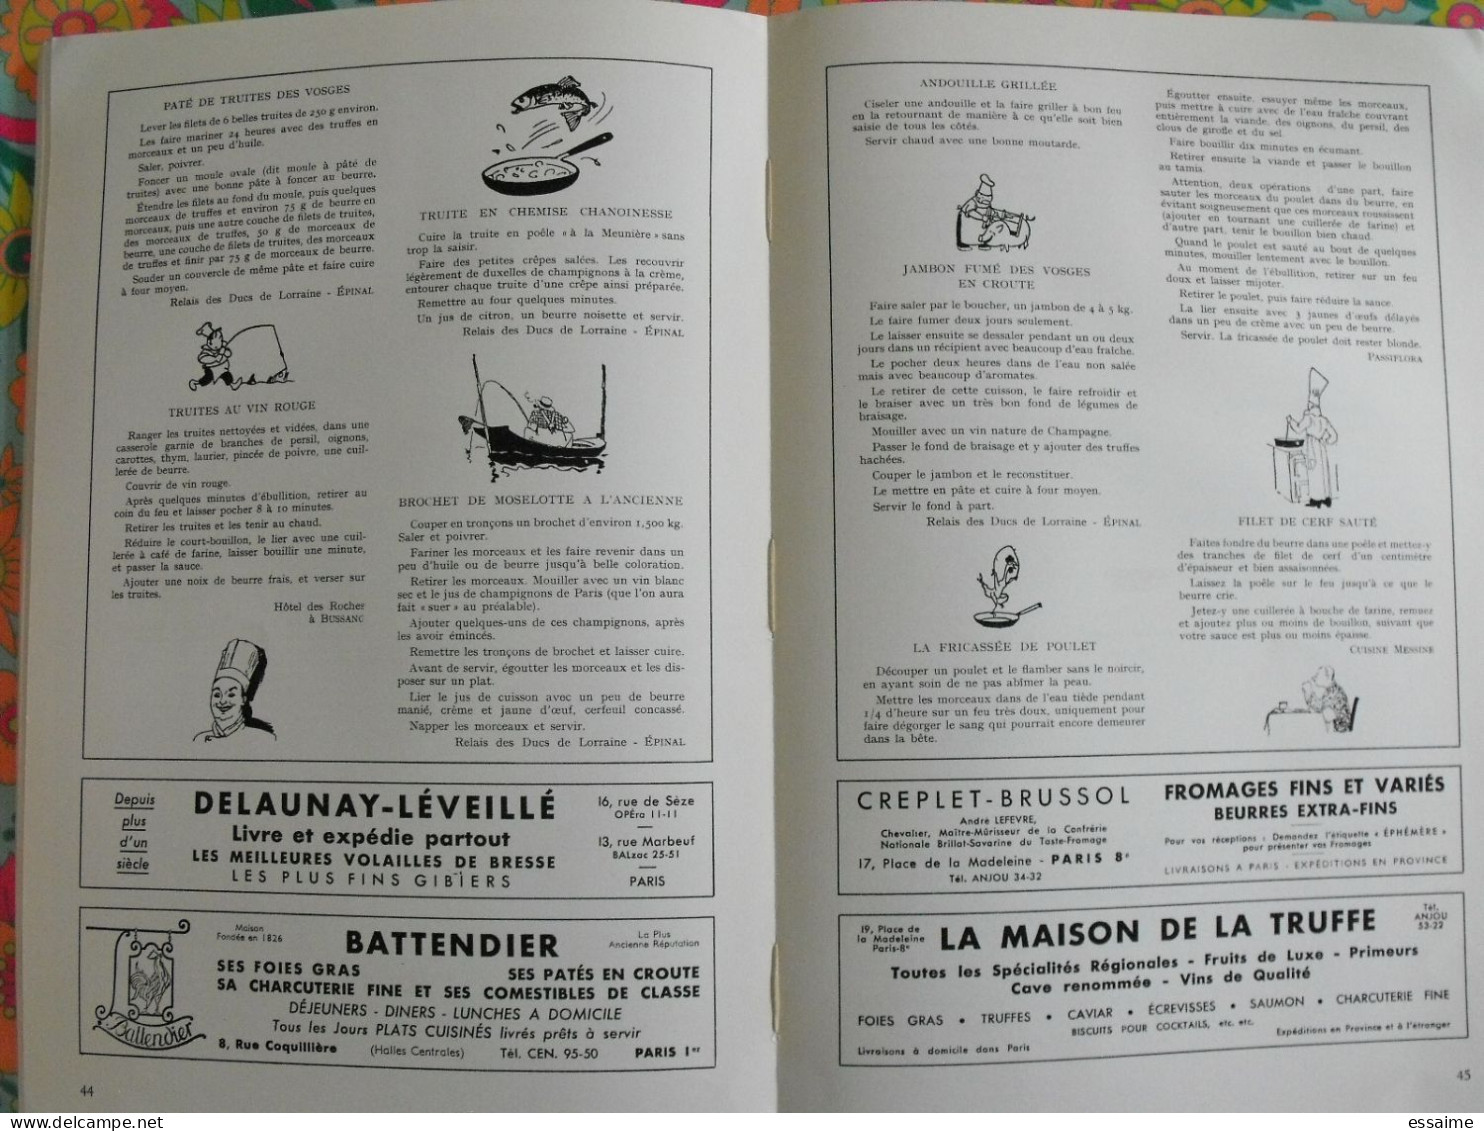 La France à table n° 121. 1966. Vosges. epinal domremy vittel contrexeville remiremont plombières bussang. gastronomie